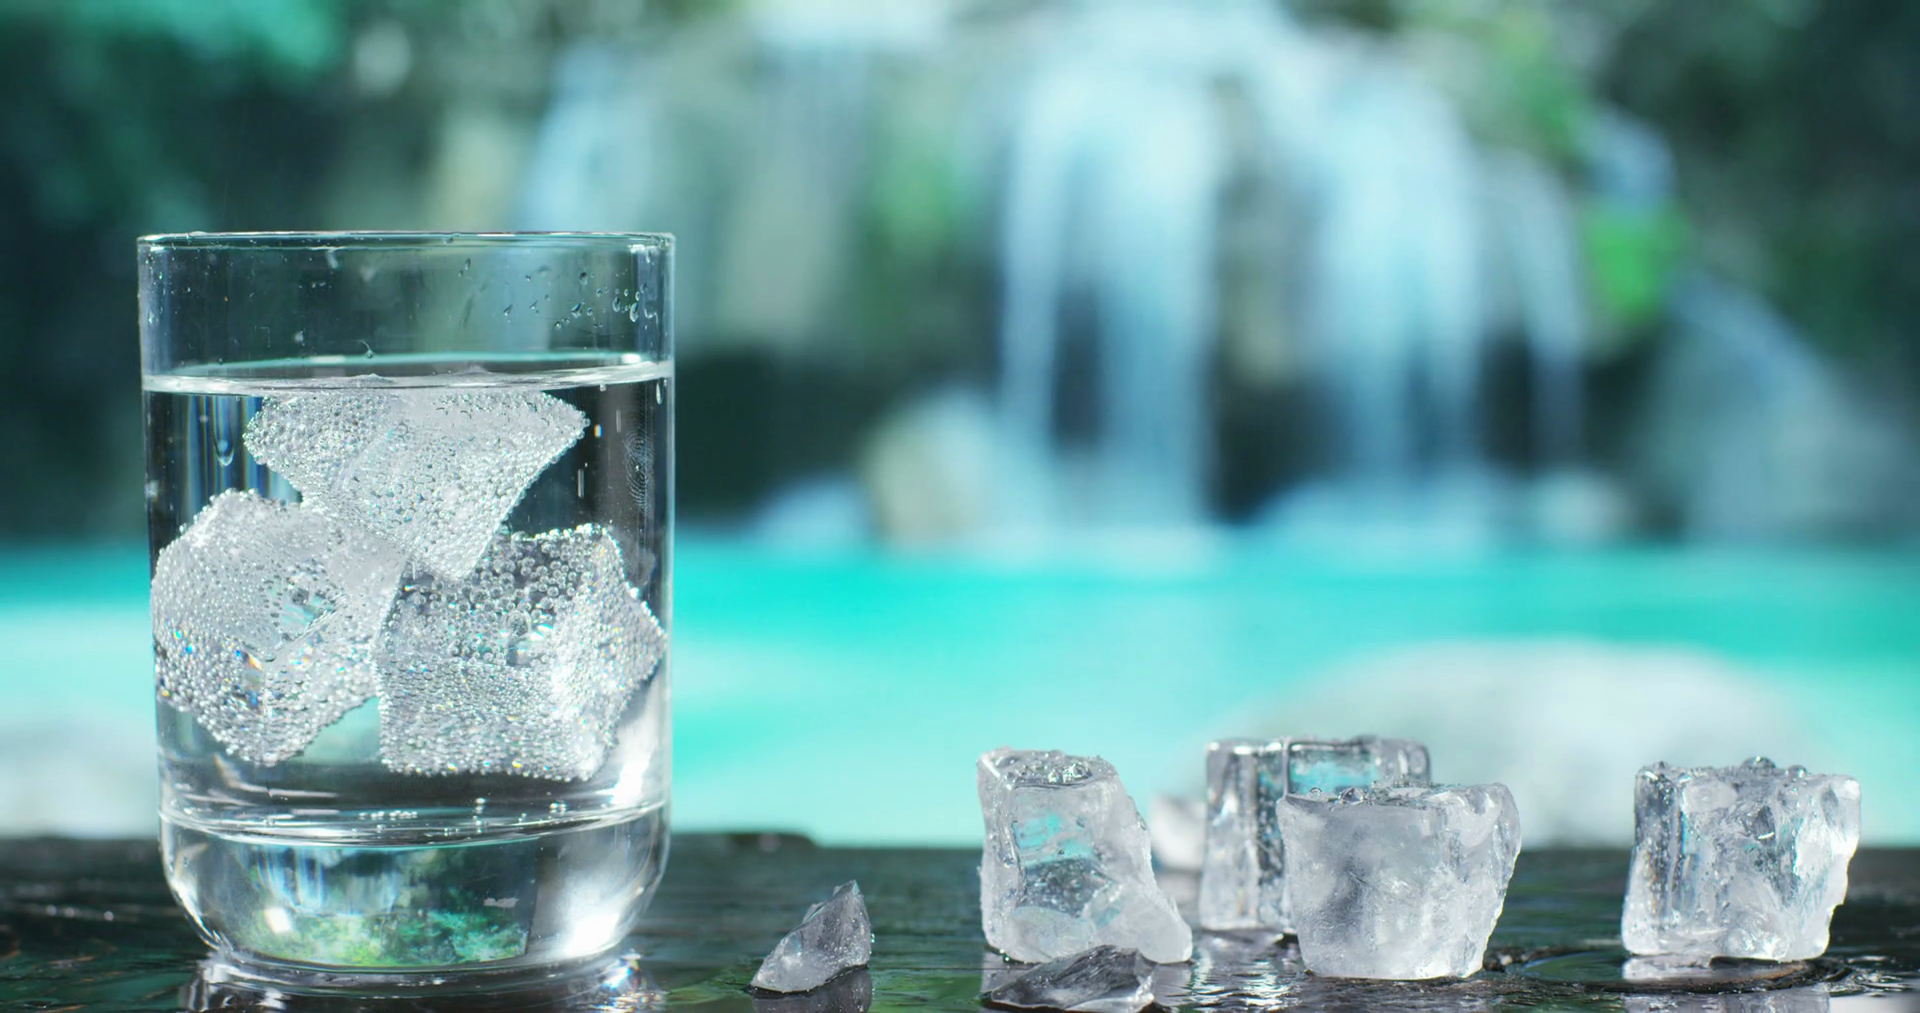 Иммунная вода. Талая вода в стакане. Кубик льда в стакане с водой. Стакан воды со льдом. Спа вода.